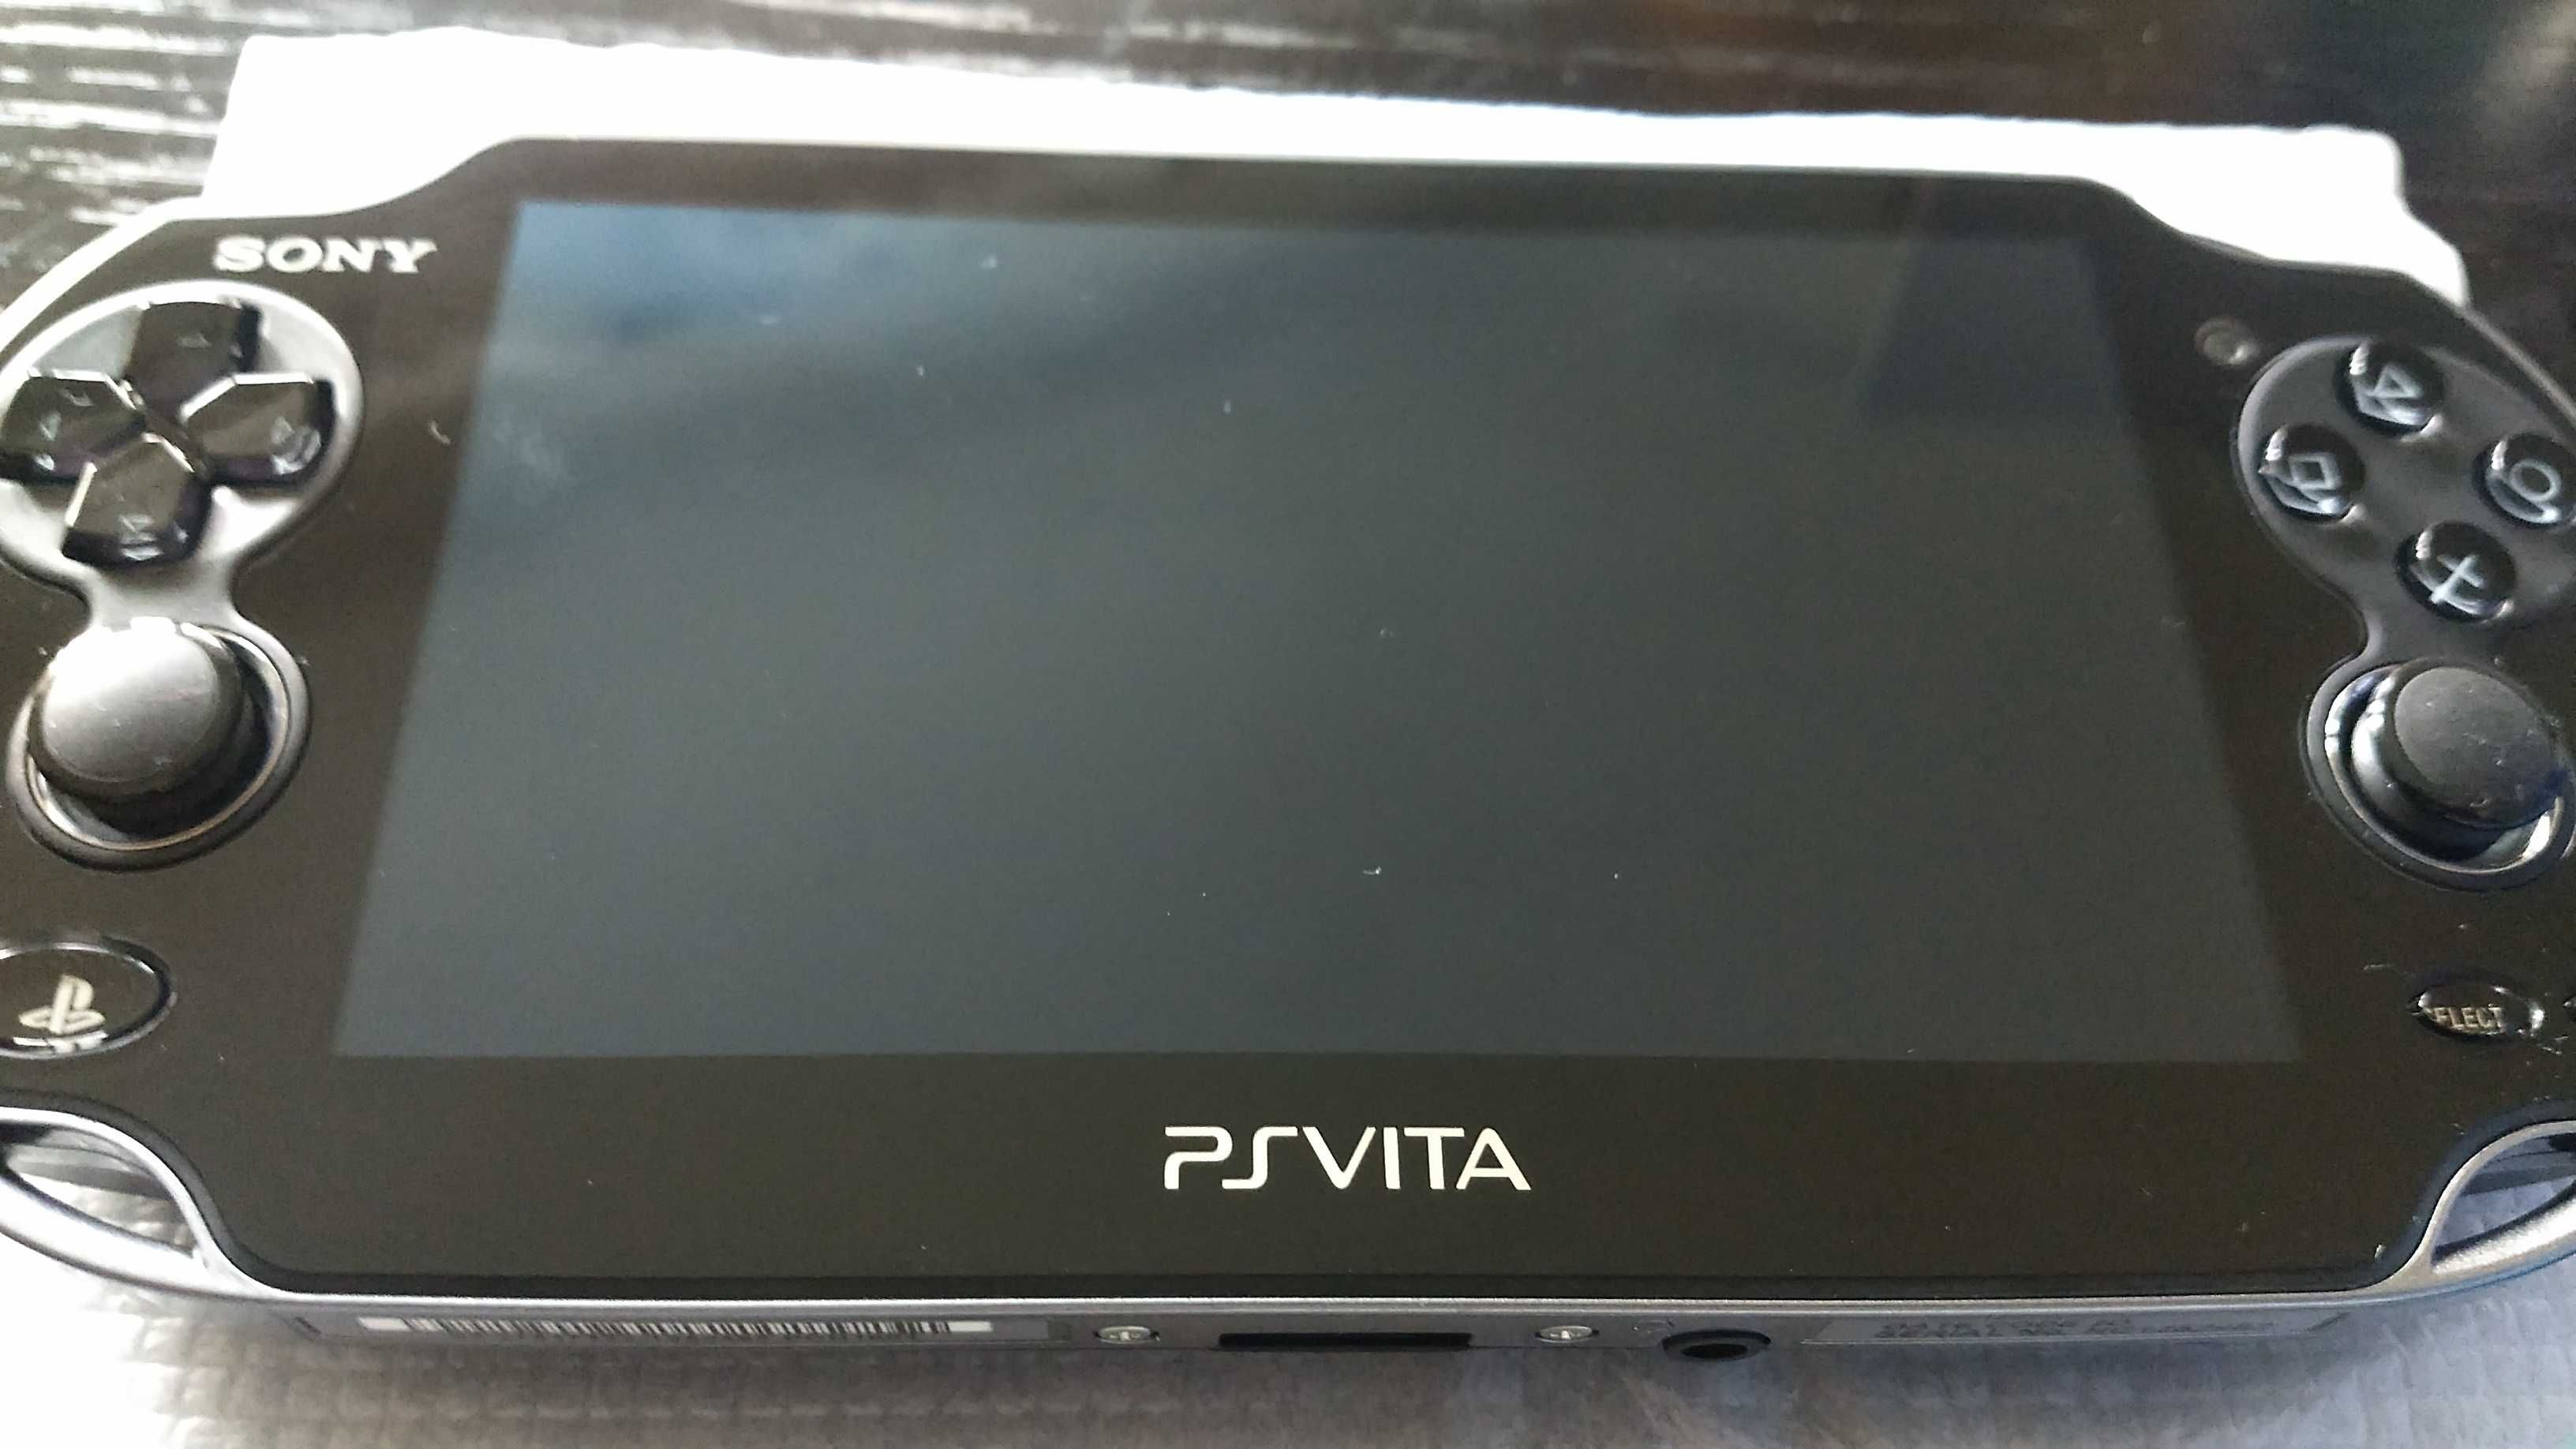 PS VITA Nowa,  PCH-1004 PlayStation Vita, WI-FI,AmOled,Karta Sony 4GB.